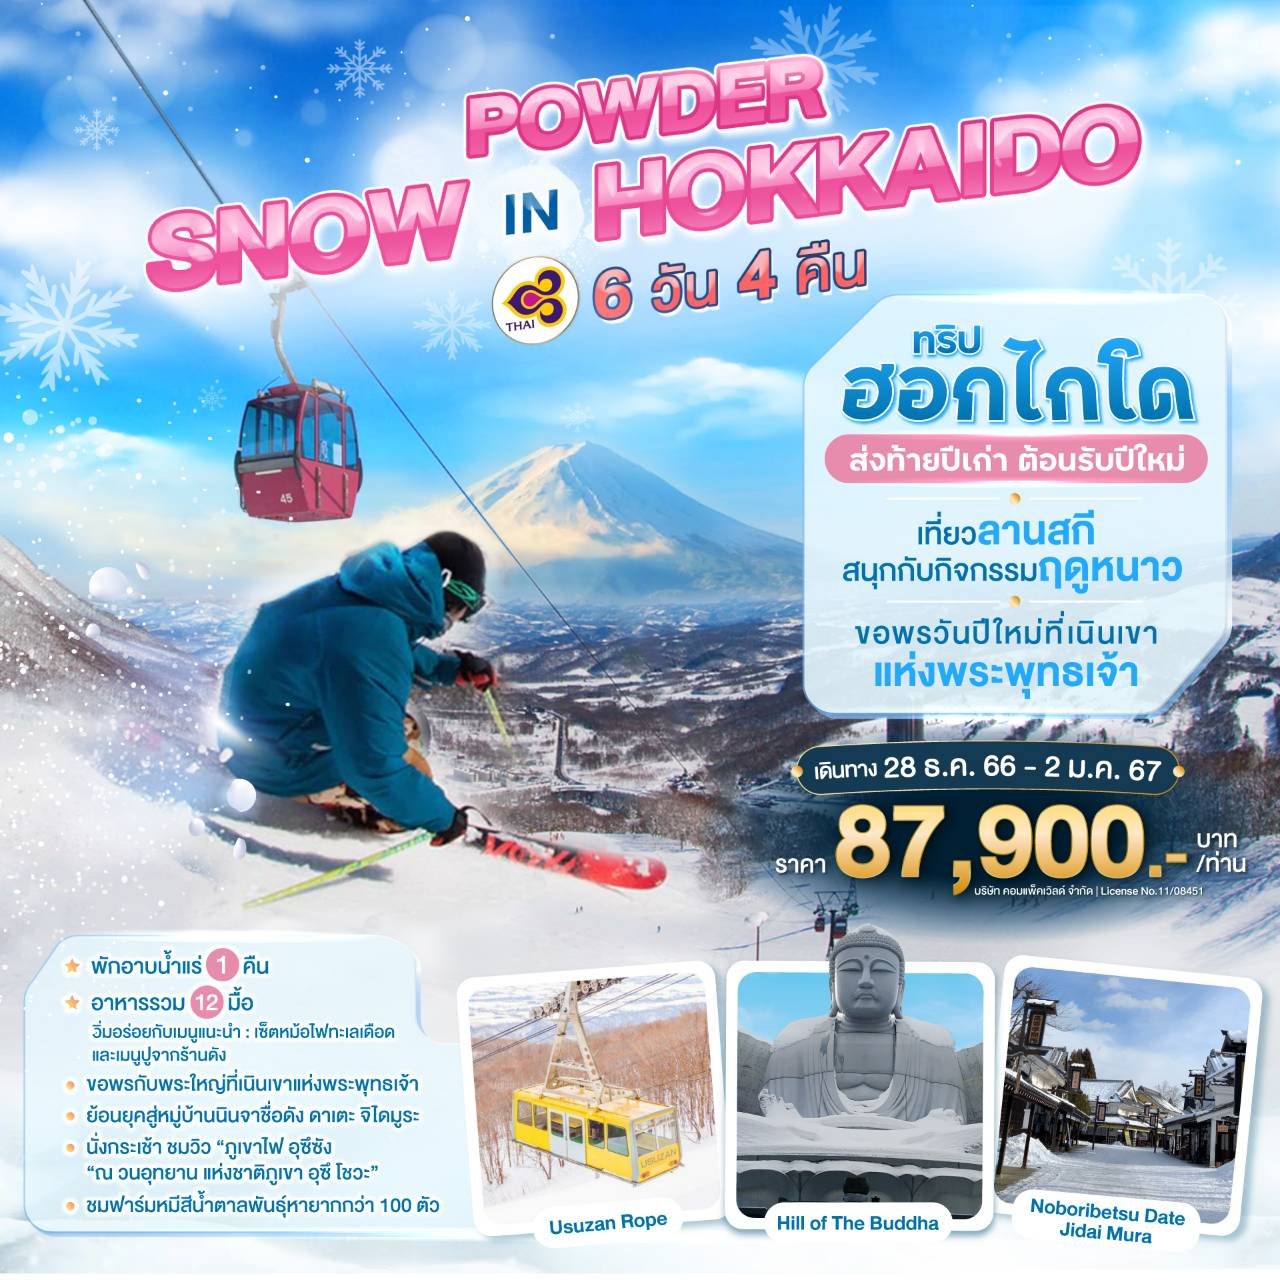 ทัวร์ญี่ปุ่น : POWDER SNOW IN HOKKAIDO 6 DAYS 4 NIGHTS [TG]